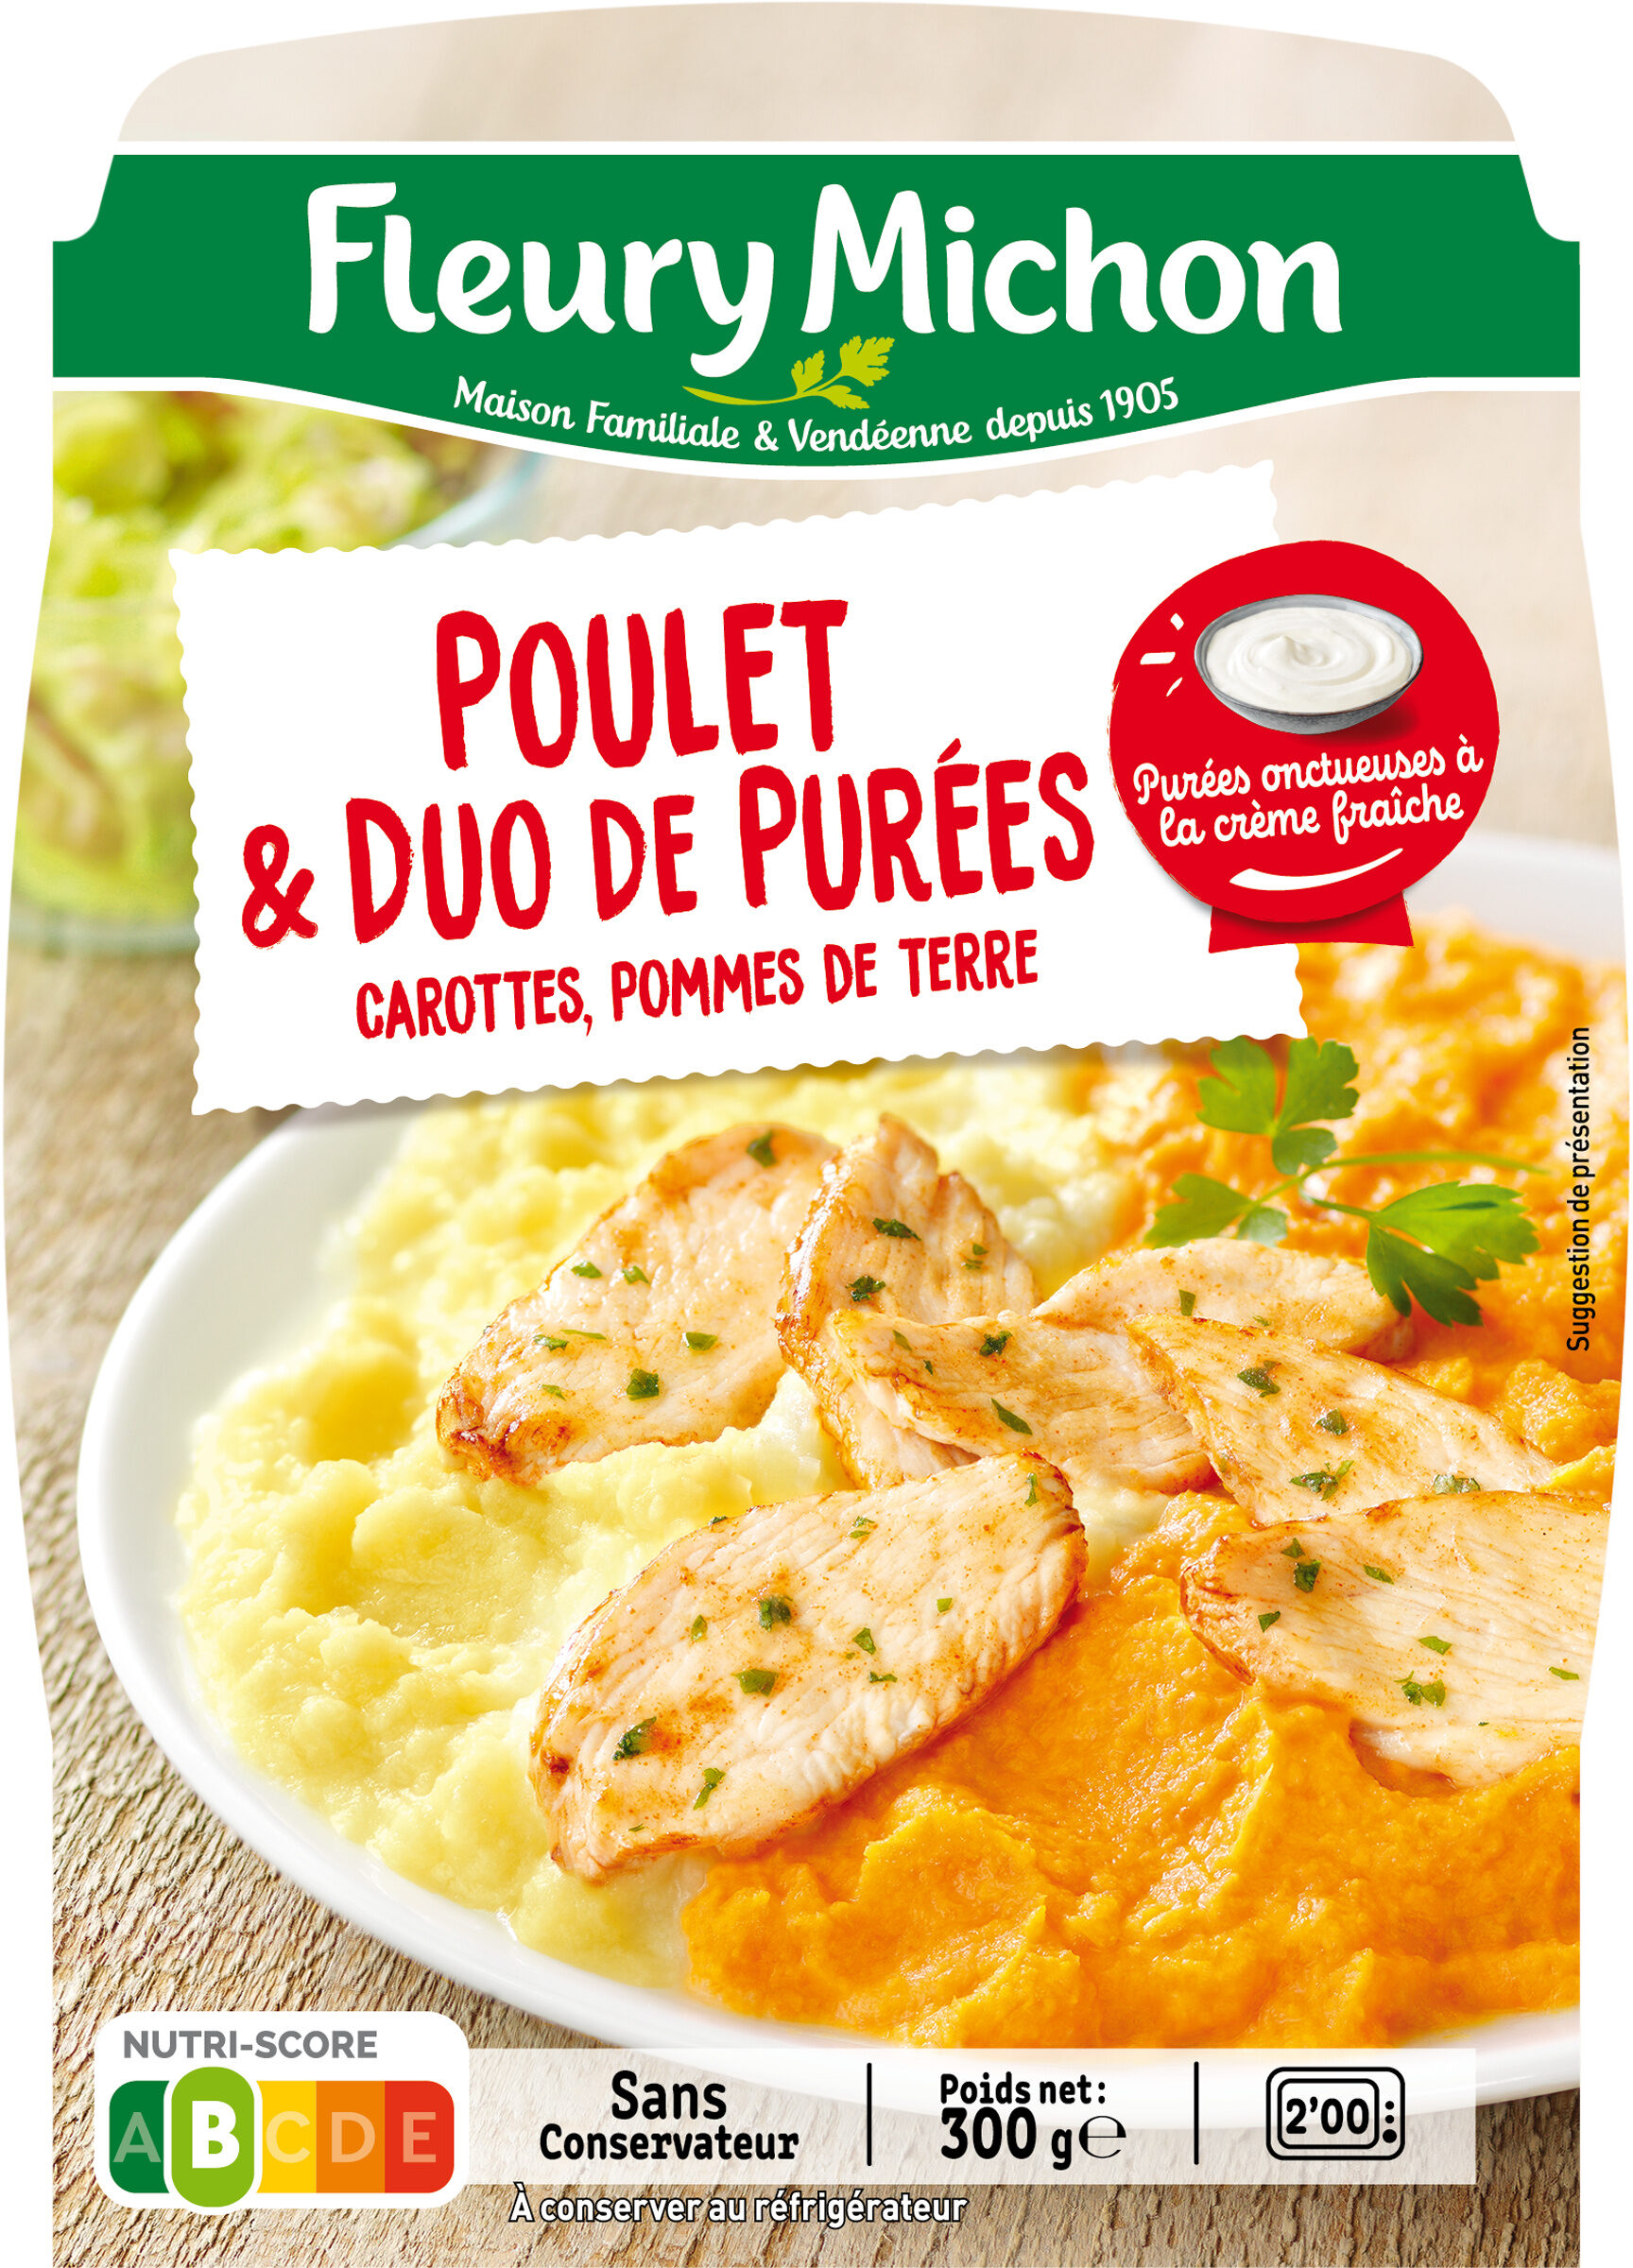 Poulet & duo de purées, carottes, pommes de terre - Product - fr